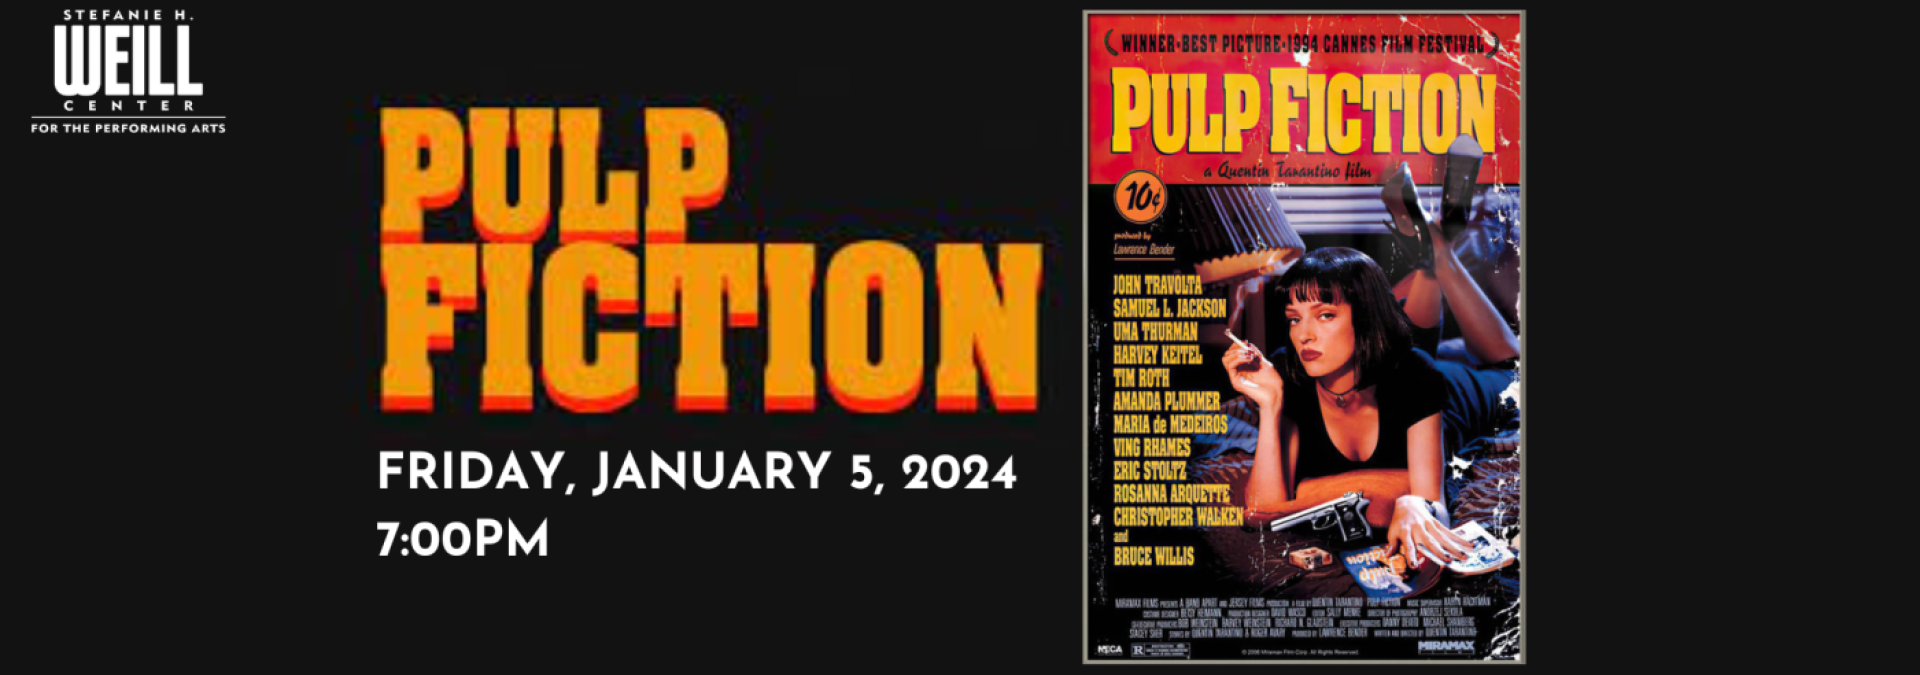 Pulp Fiction Web Banner